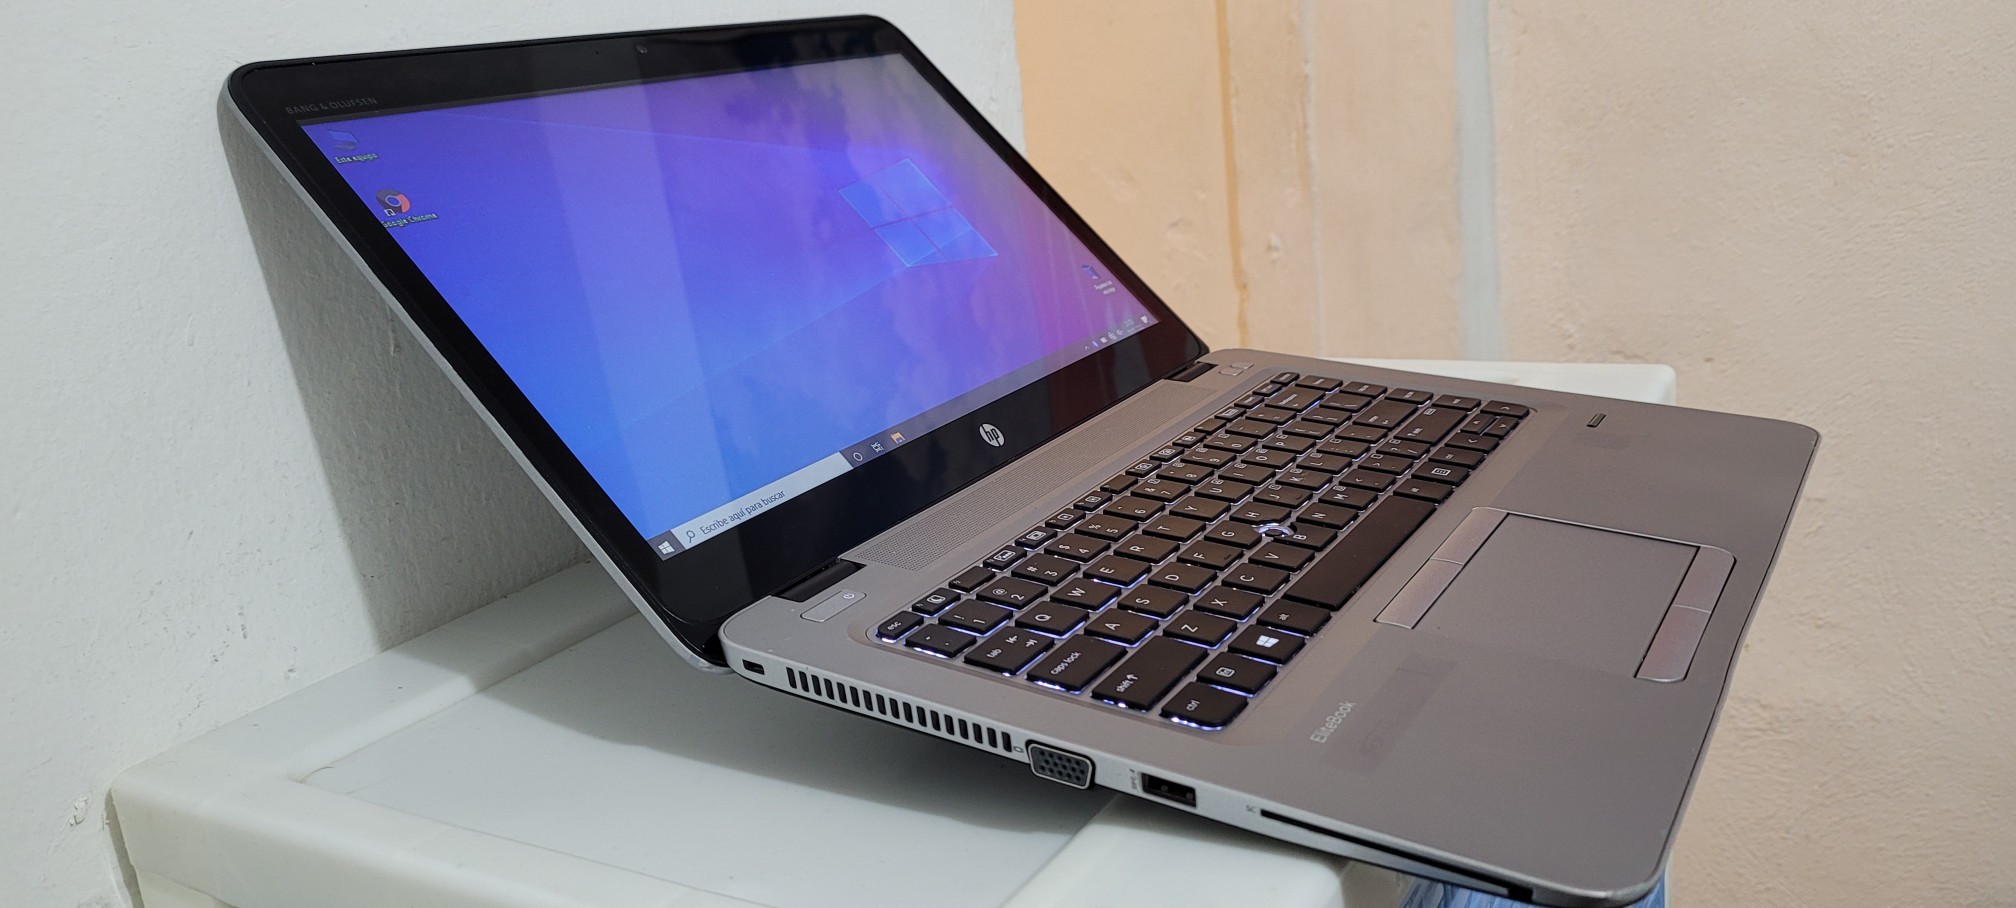 computadoras y laptops - Laptop hp G2 14 Pulg Core i5 6ta Gen Ram 8gb ddr4 Disco 500gb hdmi Wifi 1